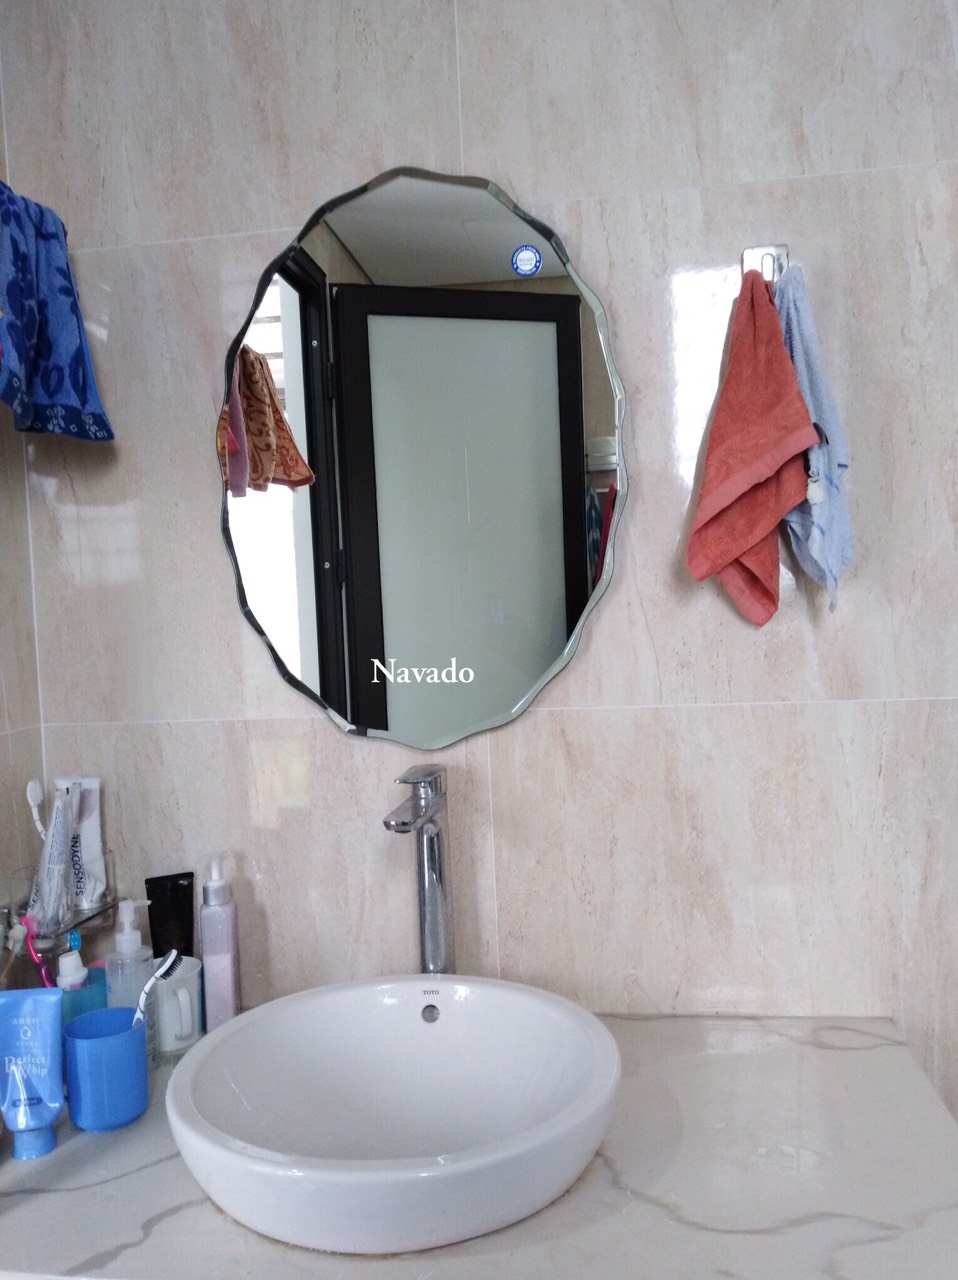 Gương phòng tắm elip Navado NAV 542C: Với thiết kế dạng elip đẹp mắt, gương phòng tắm Navado NAV 542C sẽ là điểm nhấn cho phòng tắm của bạn. Với độ dày kính lên đến 5mm và sản xuất từ chất liệu chịu nước, gương phòng tắm Navado NAV 542C là một sản phẩm chất lượng và bền vững.